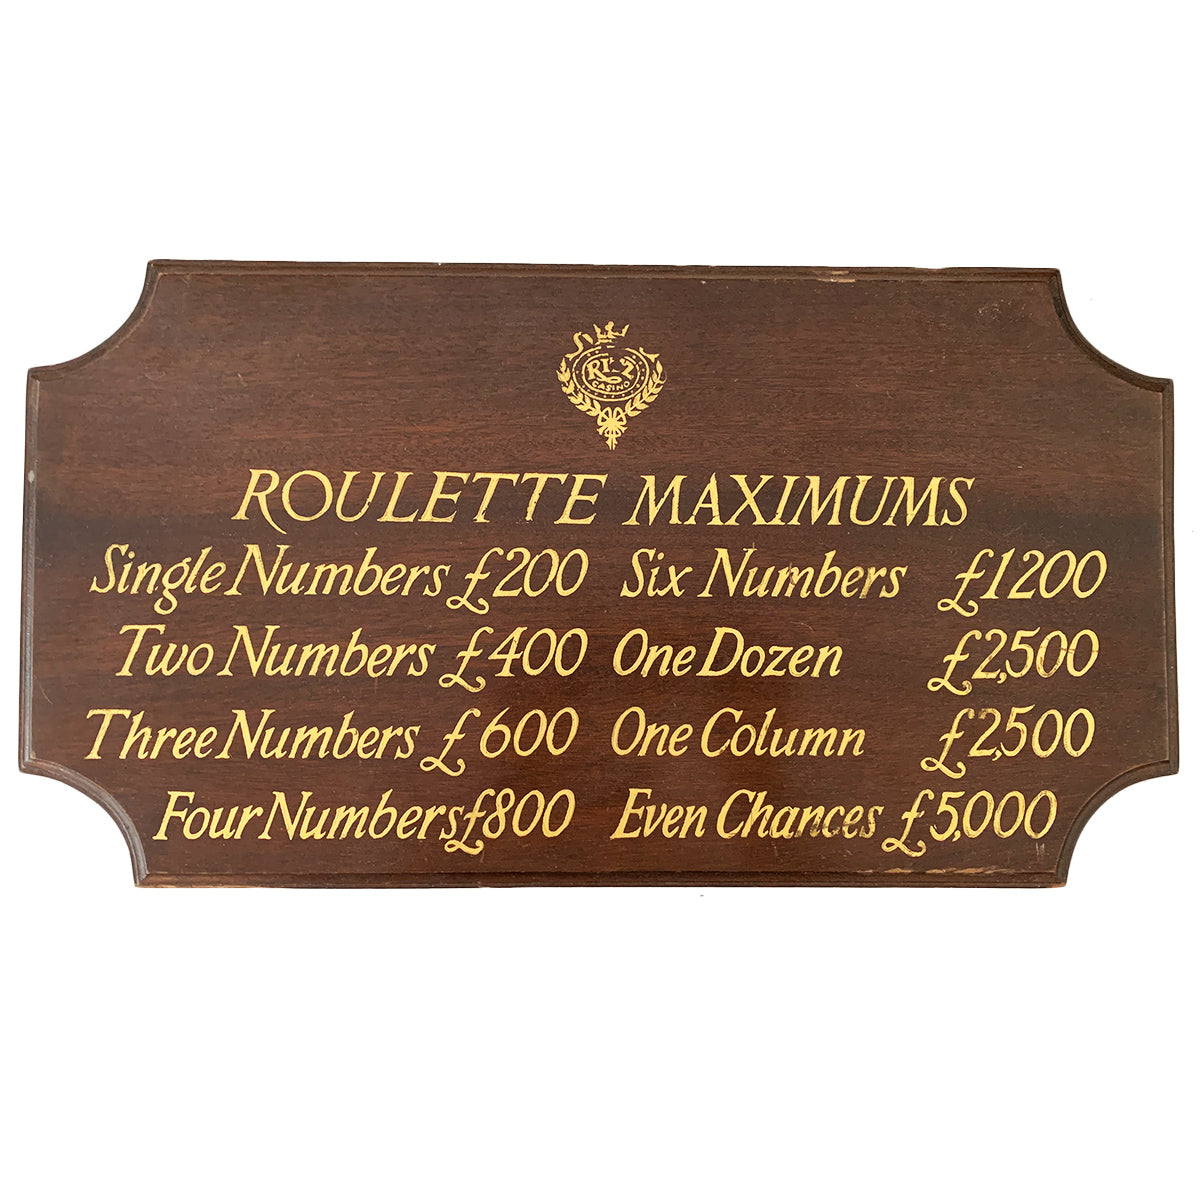 Roulette Maximums Sign